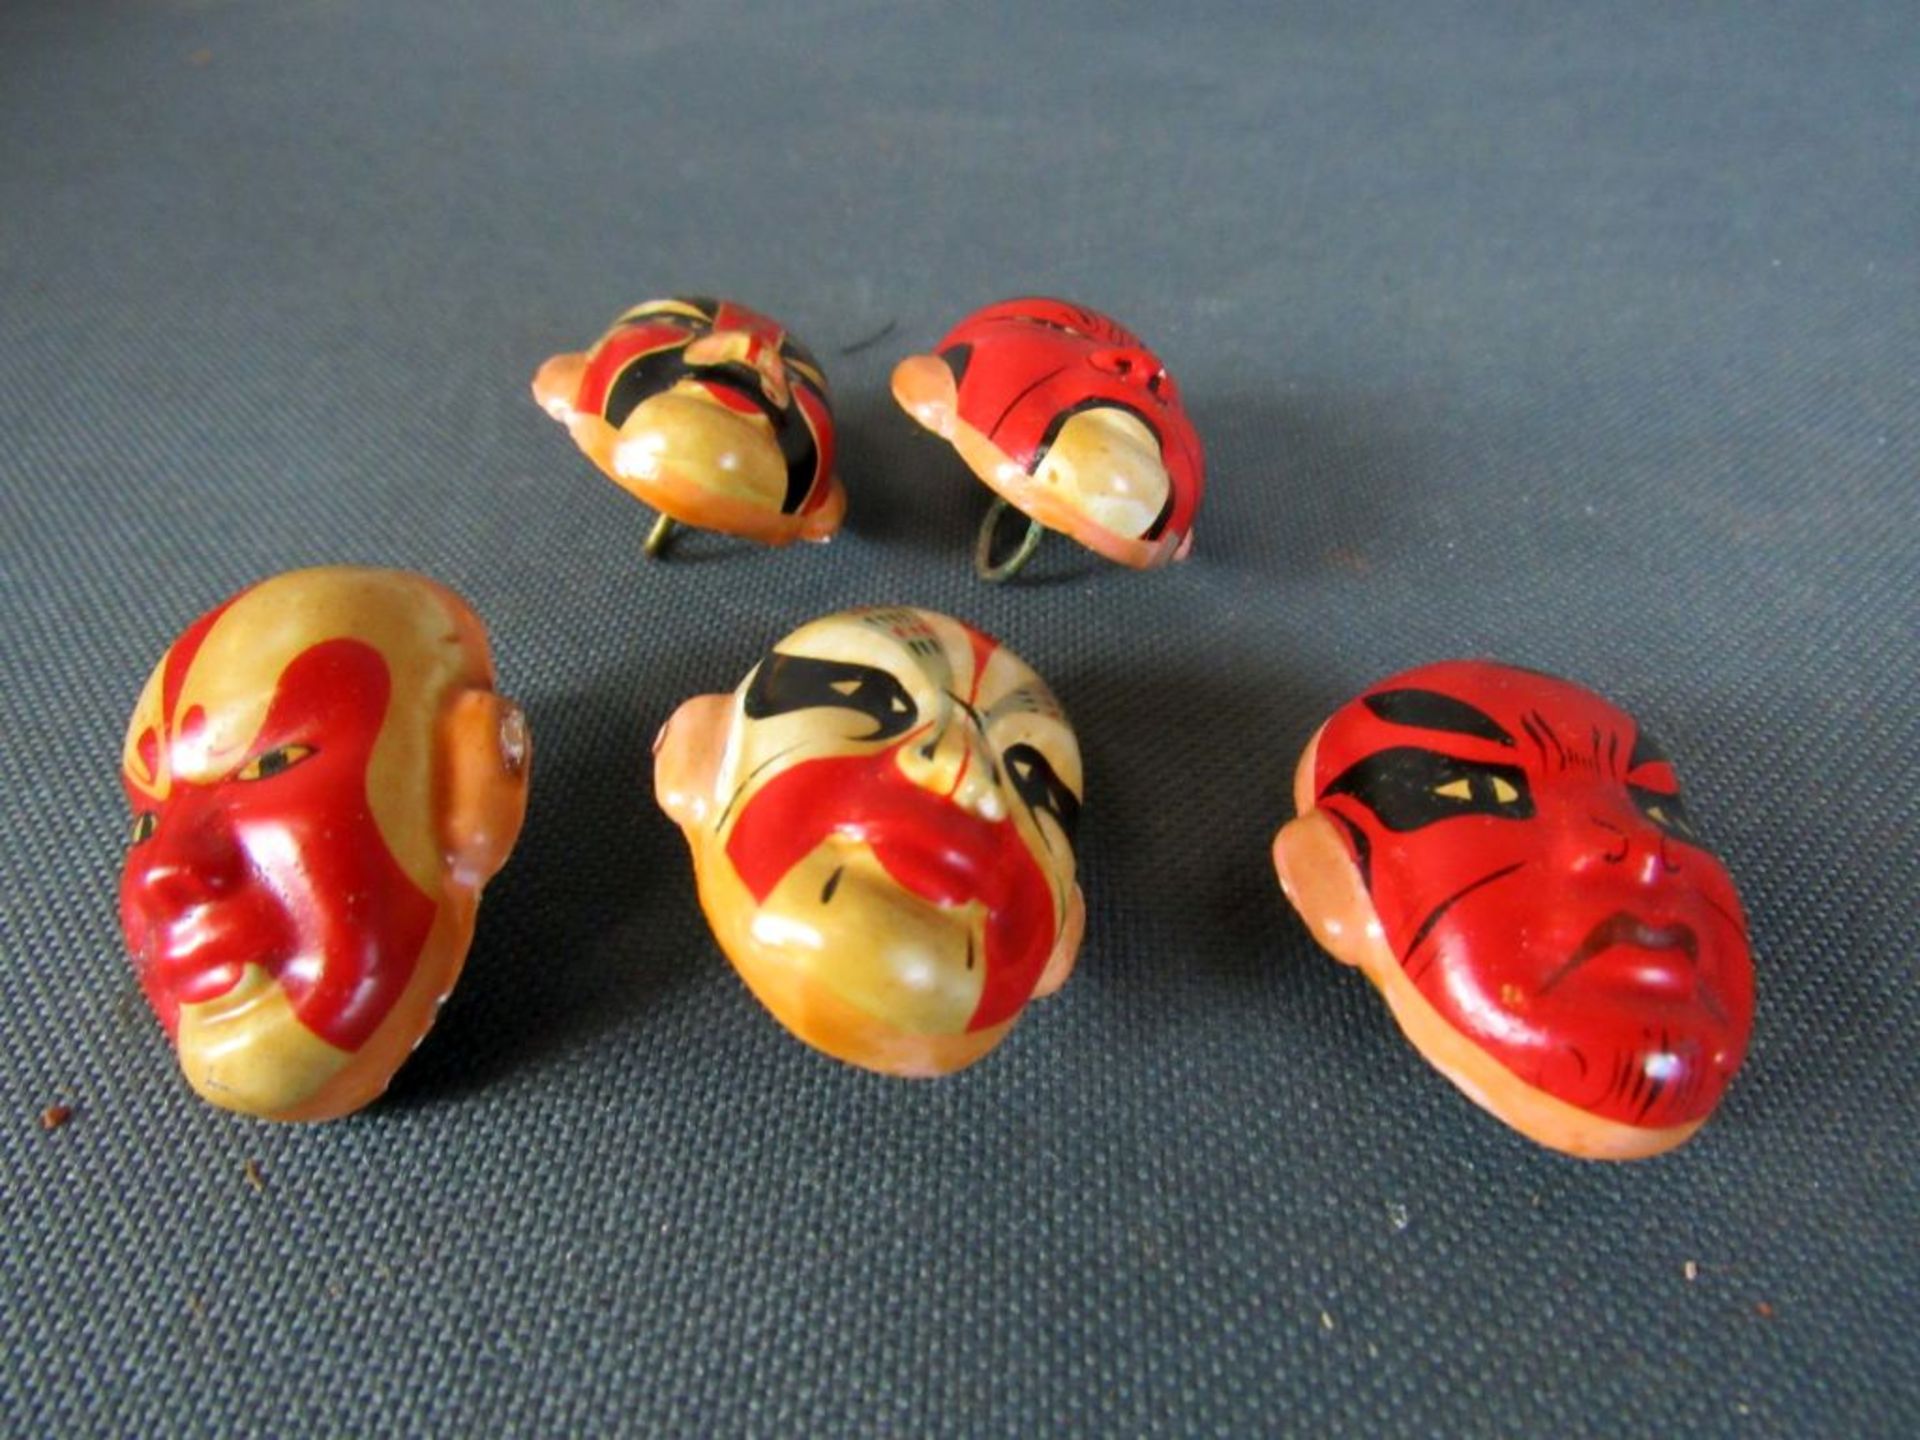 5 kleine Masken - Image 2 of 6